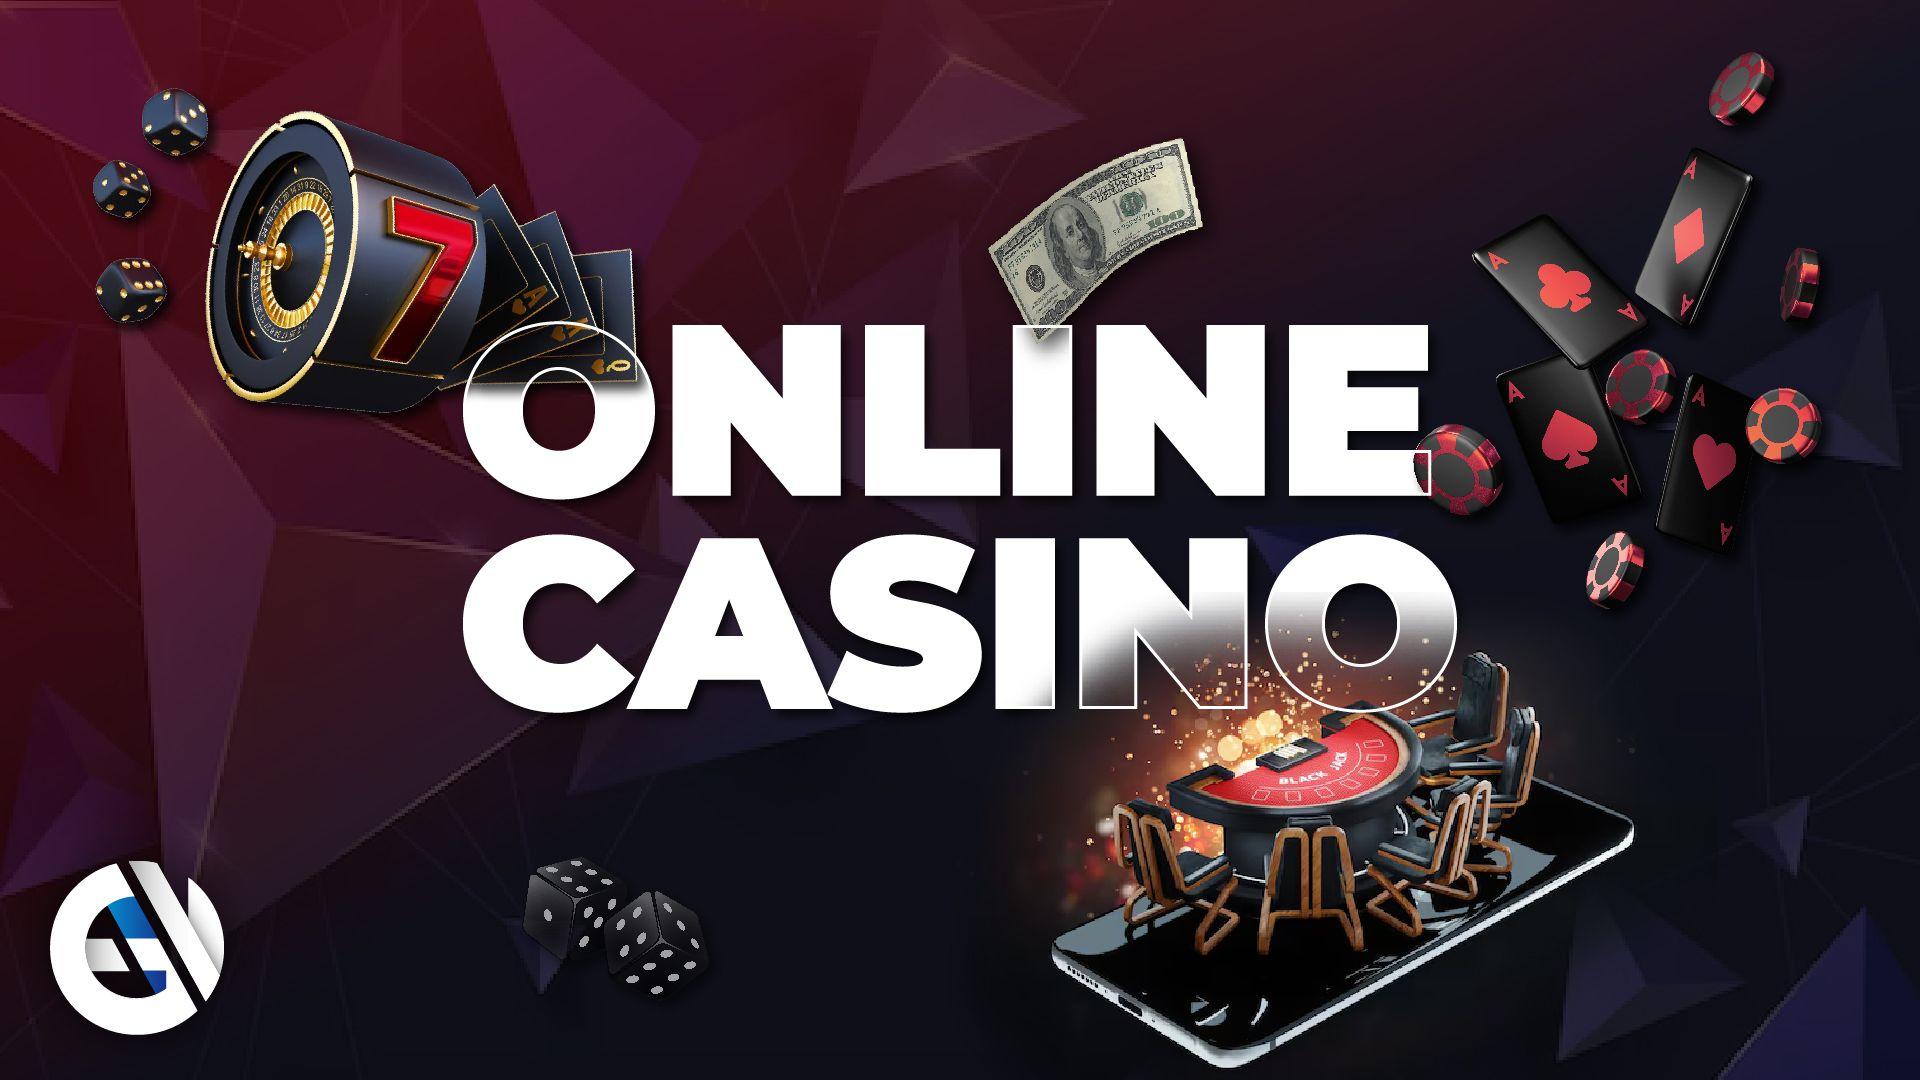 Casinobonusar 2023: Din guide till de bästa erbjudandena